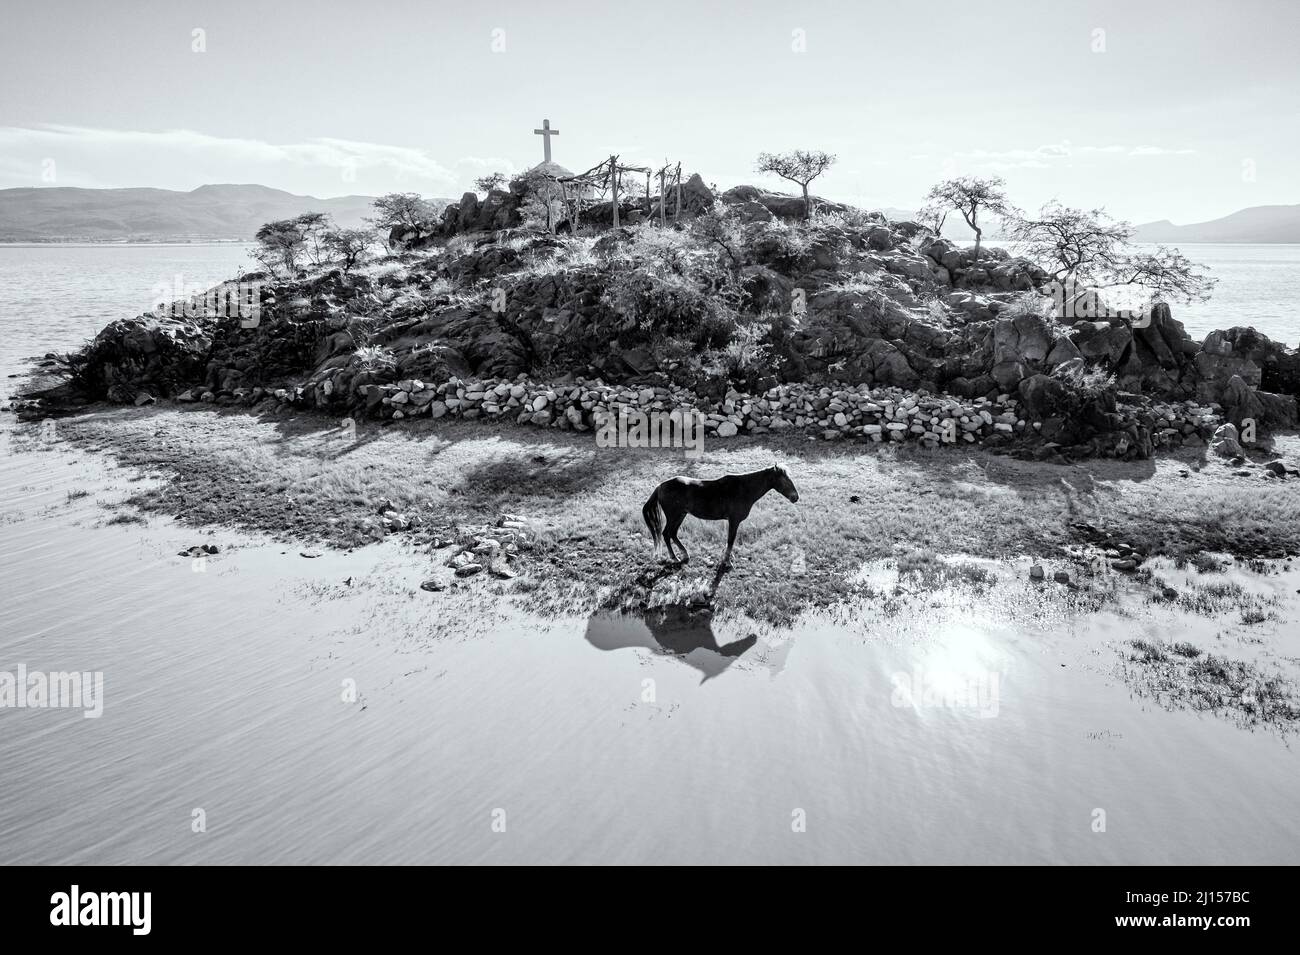 Imagen en blanco y negro de un caballo en una isla que tiene un santuario para los pescadores, Lago Cuitzeo, Michoacán, México. Foto de stock